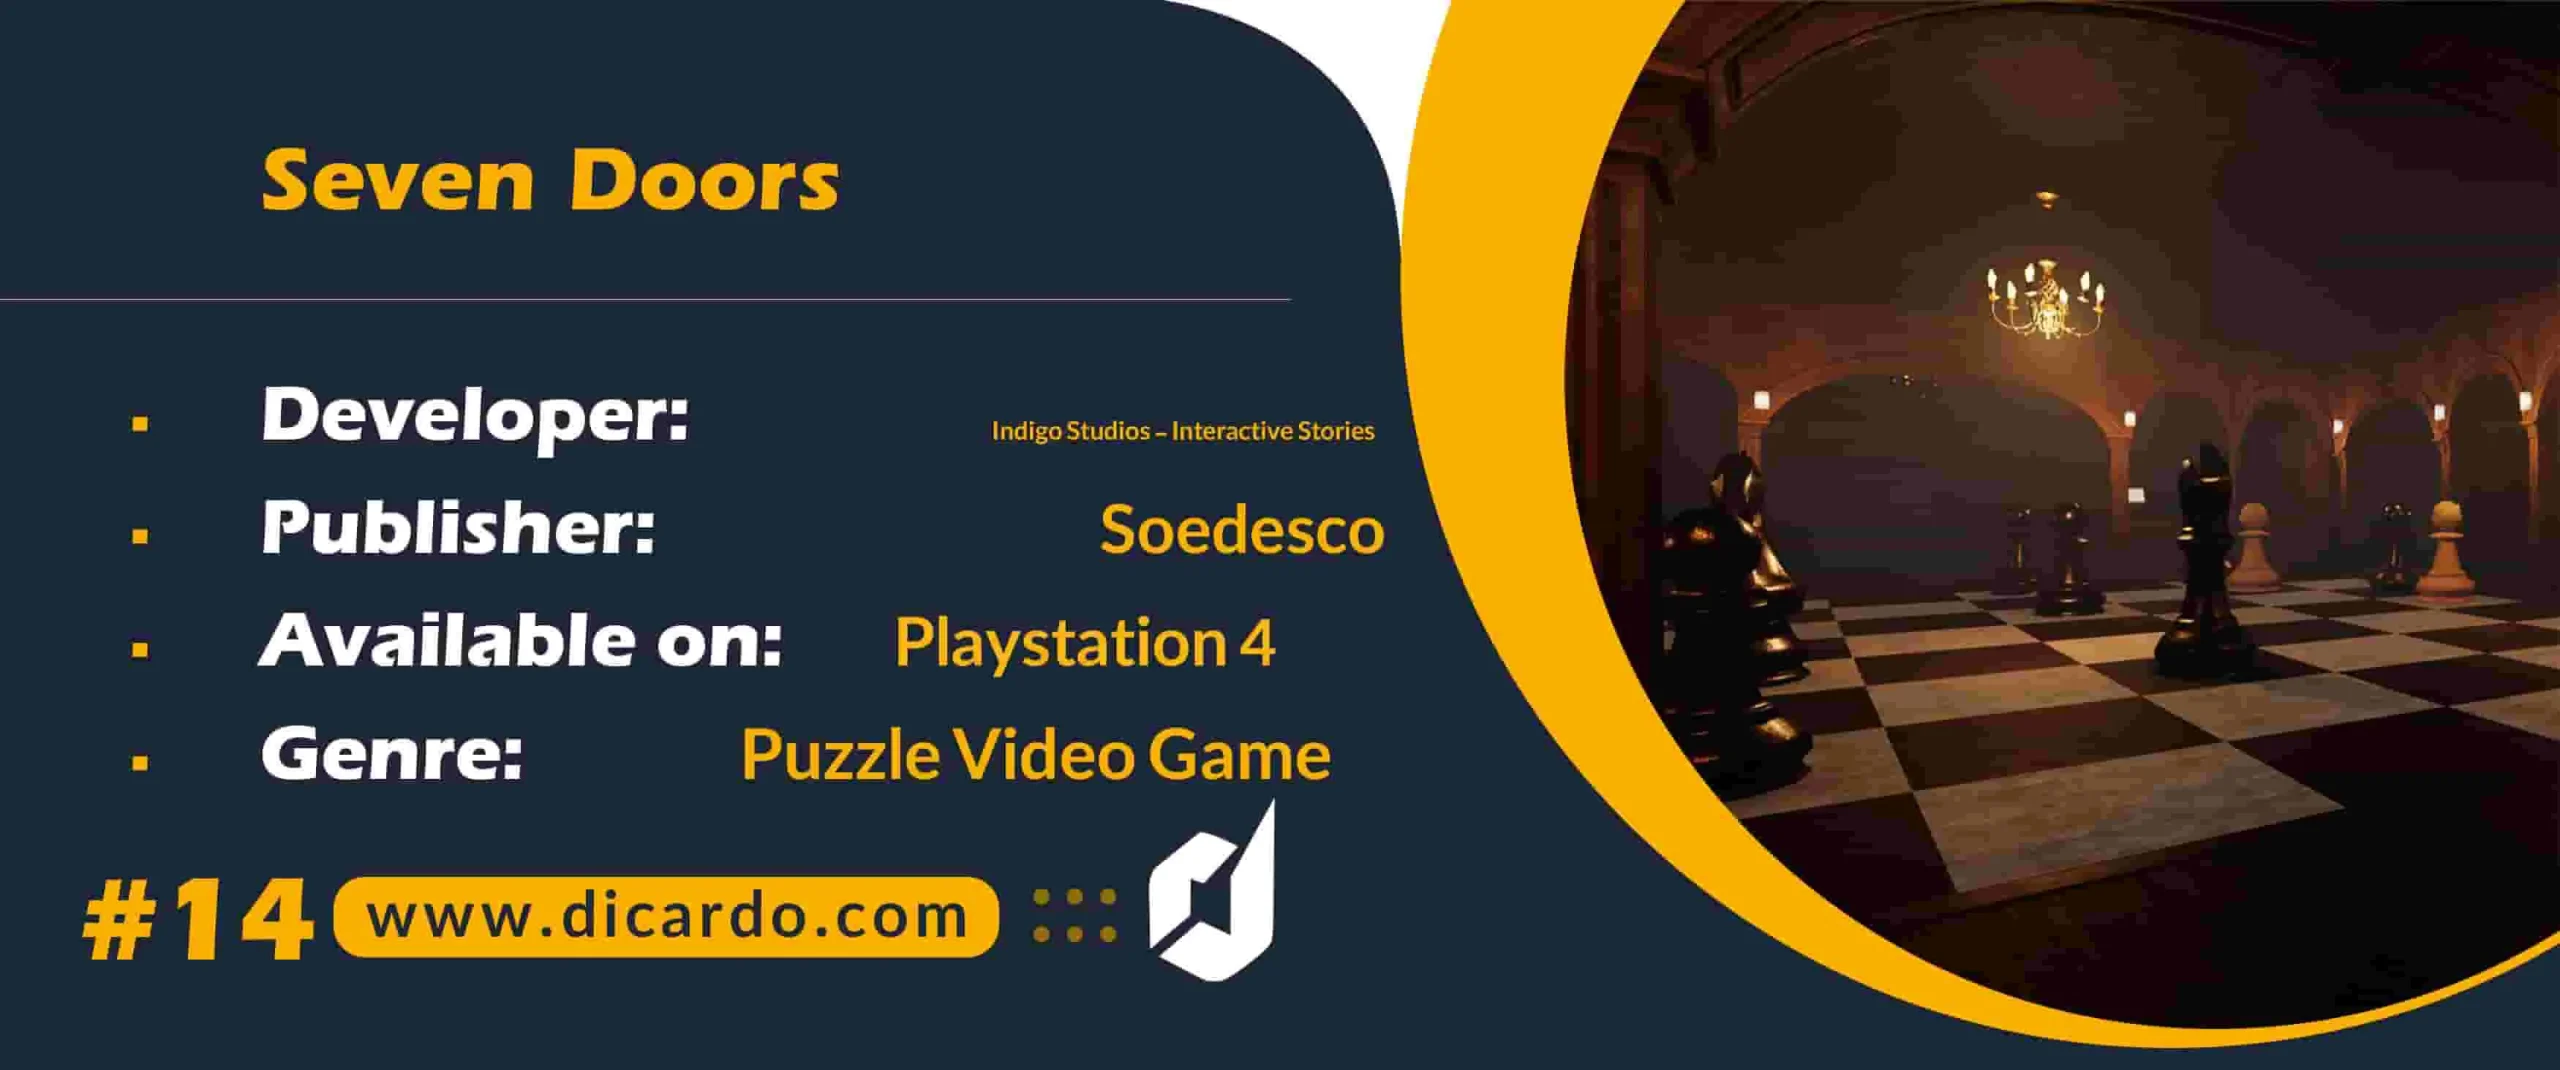 #14 سون دورز Seven Doors یکی دیگر از بازیهای PS4 با هفت در چالش برانگیز